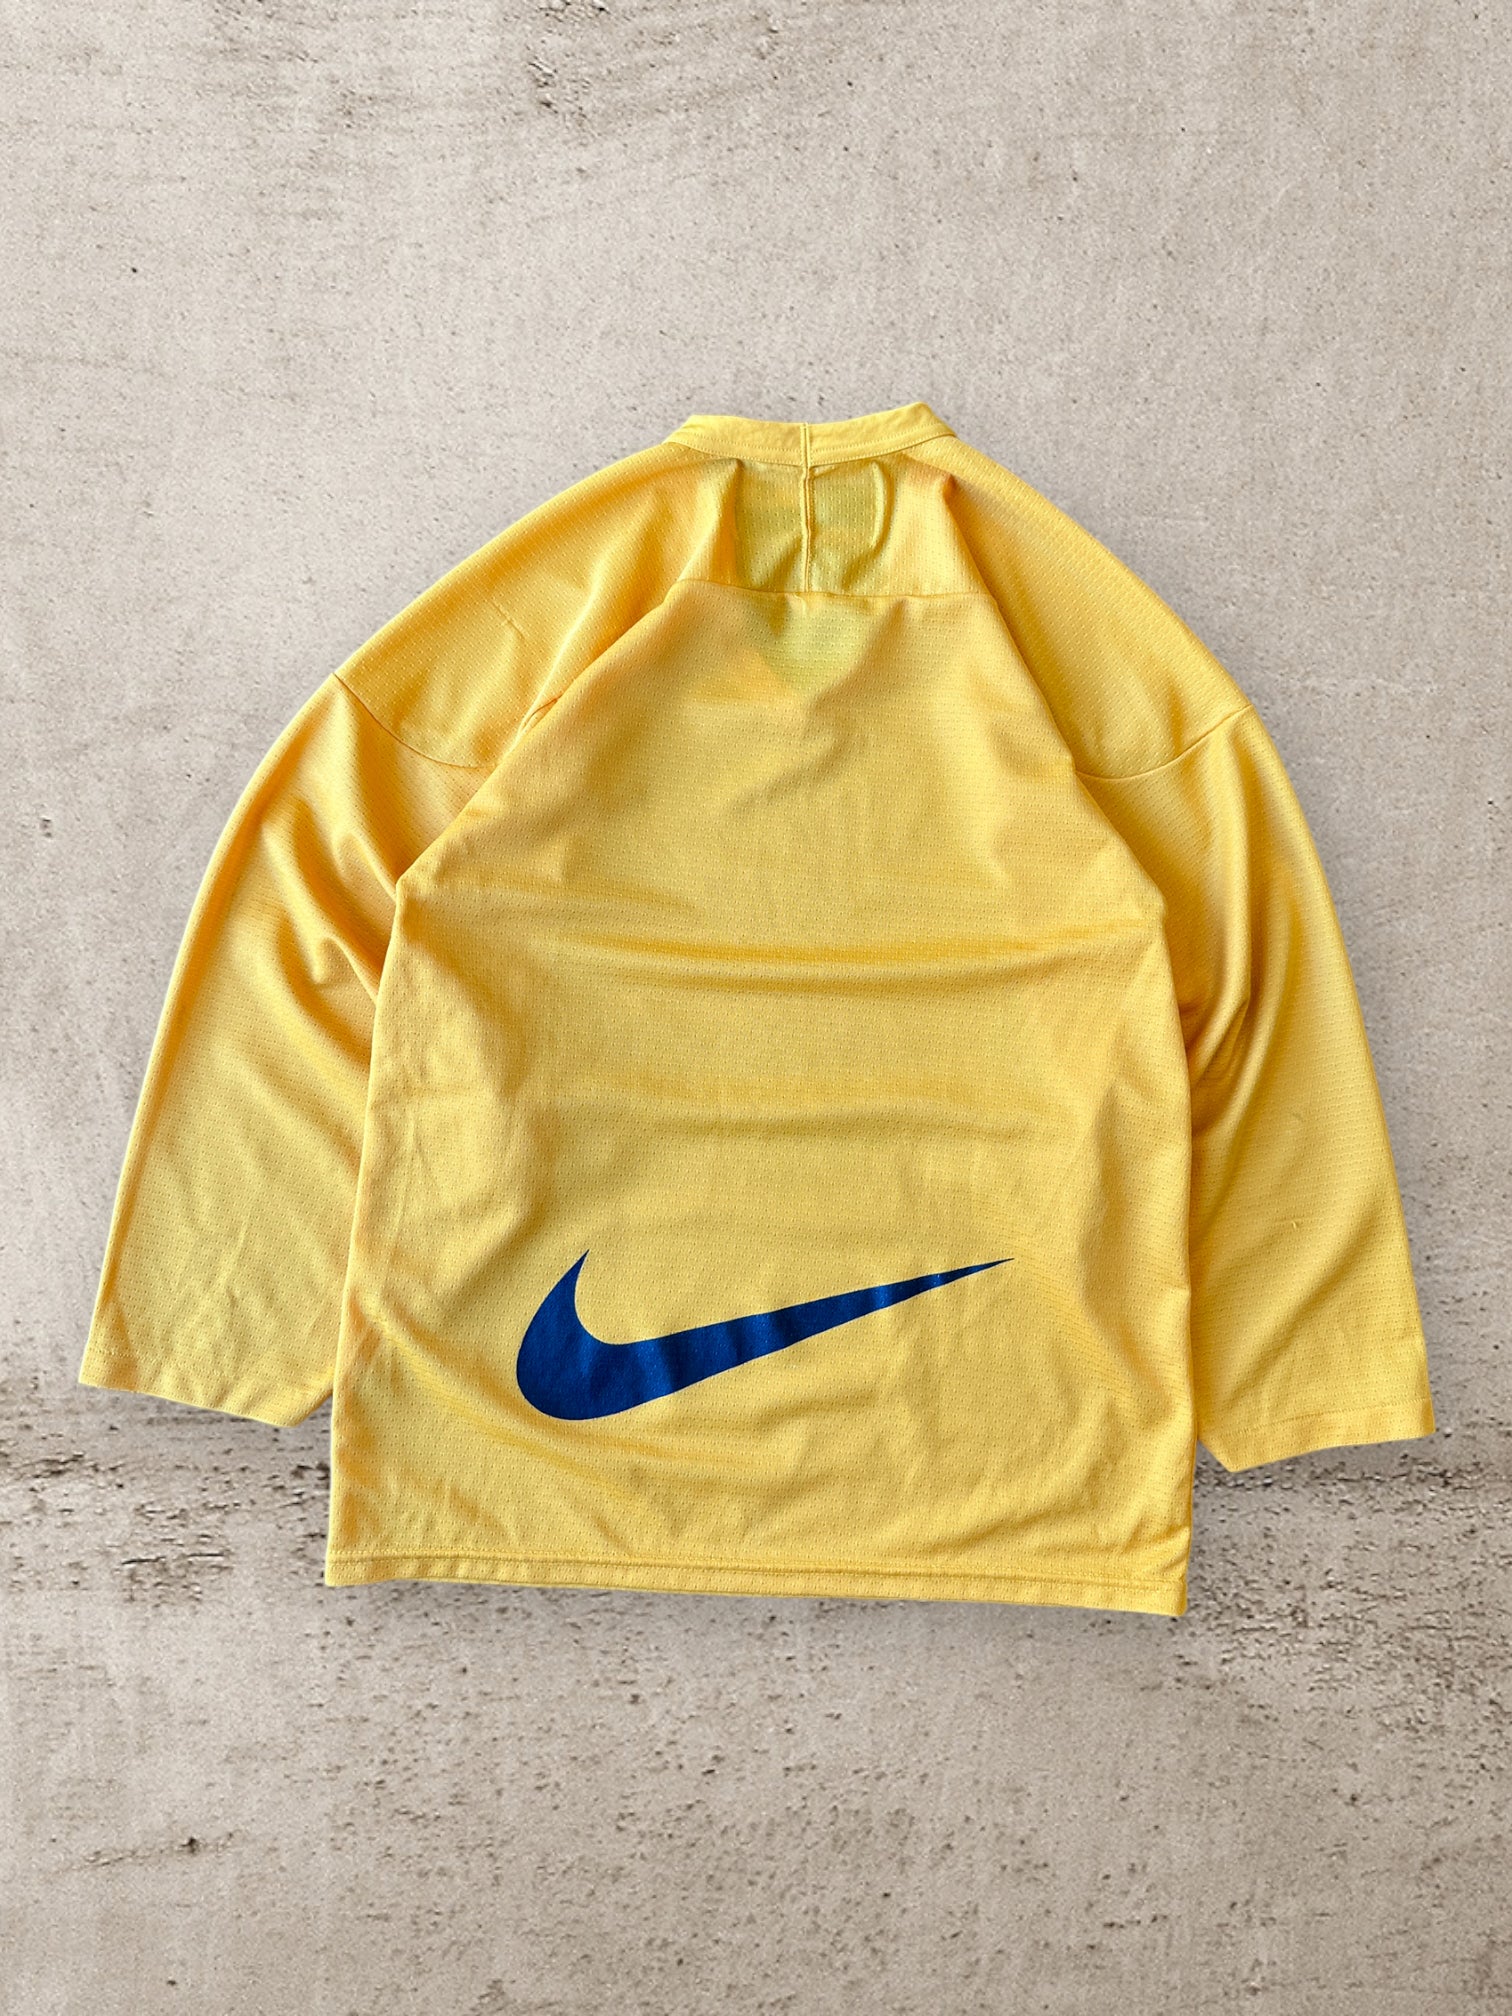 90s Nike Team Yellow Mesh Hockey Jersey - Small